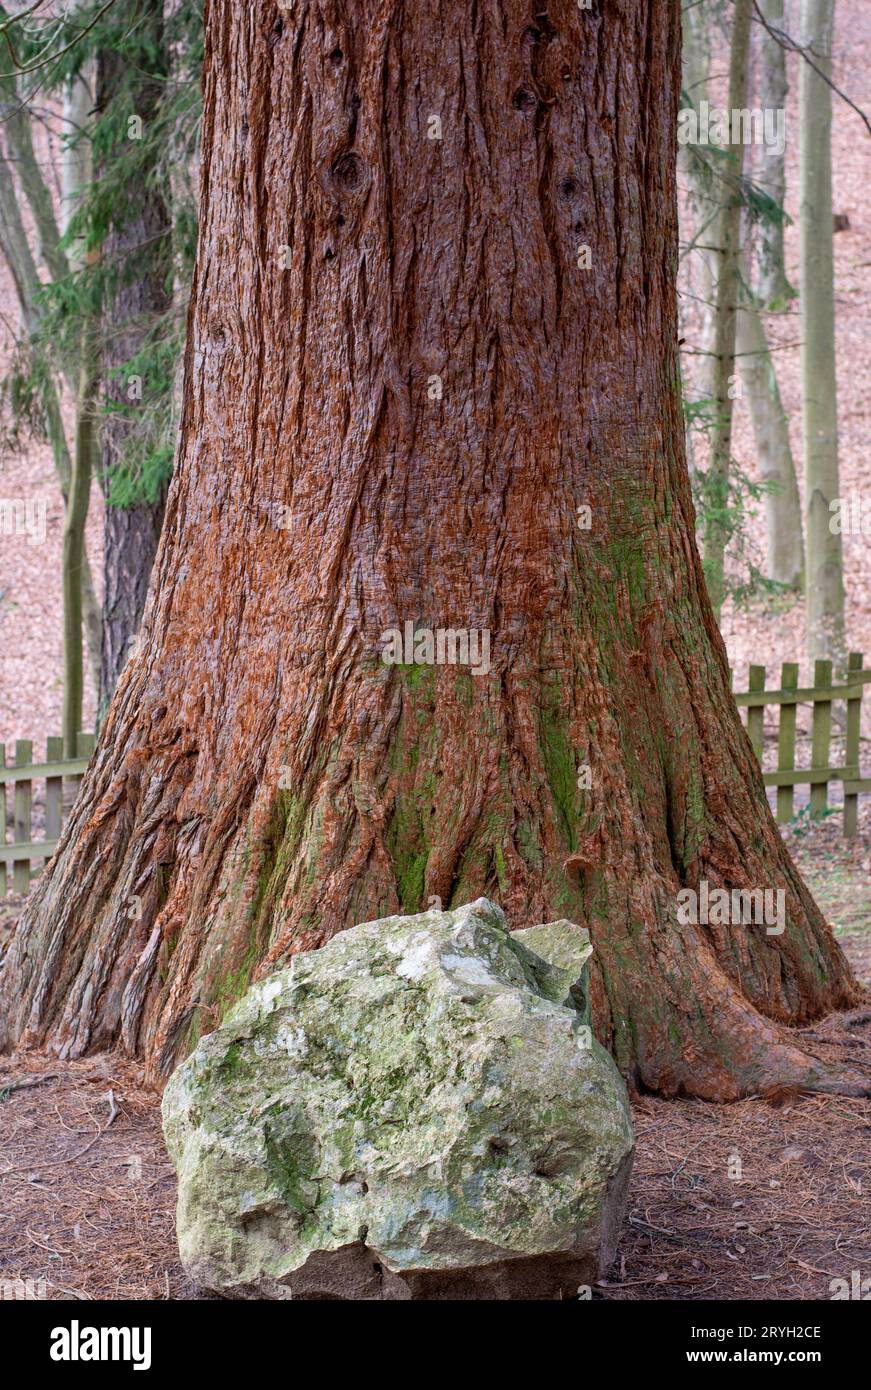 Stamm des riesigen Mammutbaums. Sequoiadendron giganteum oder Sierran Redwood im Wald. Stockfoto